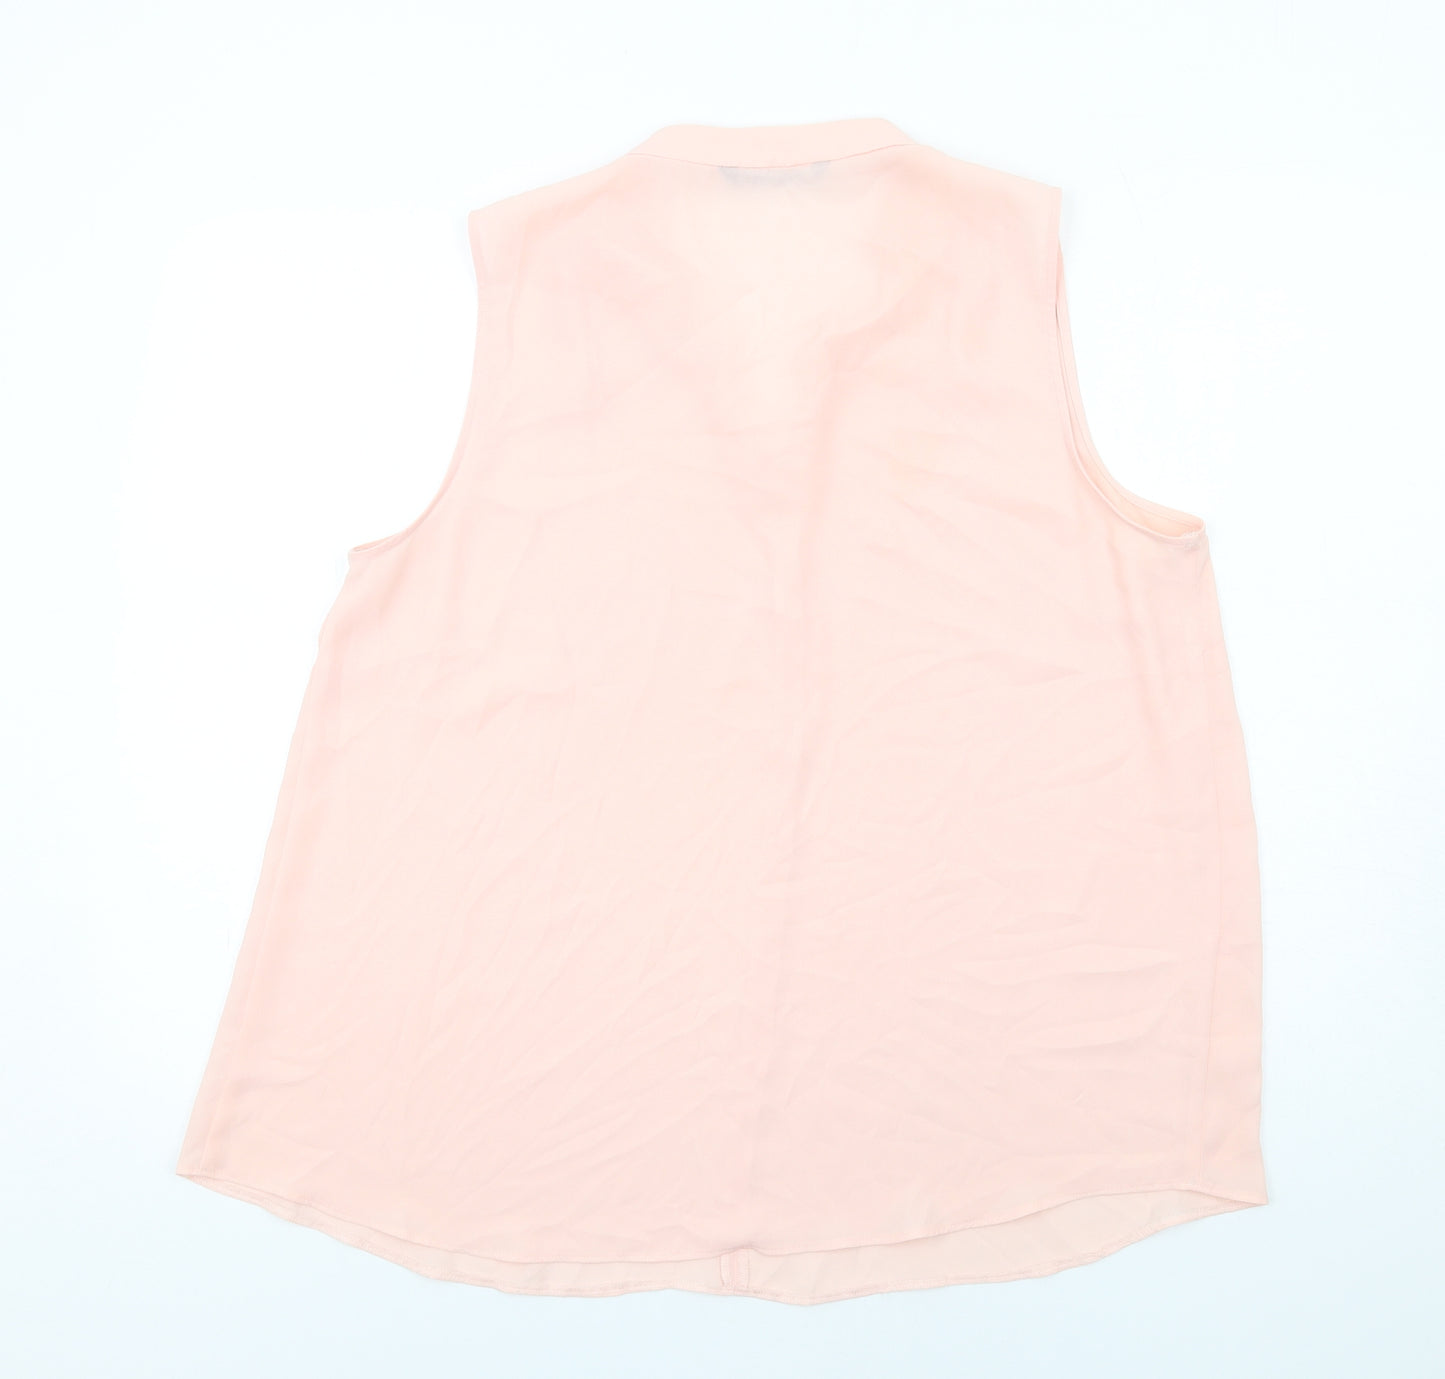 Bonmarché Womens Pink Polyester Basic Blouse Size 18 V-Neck